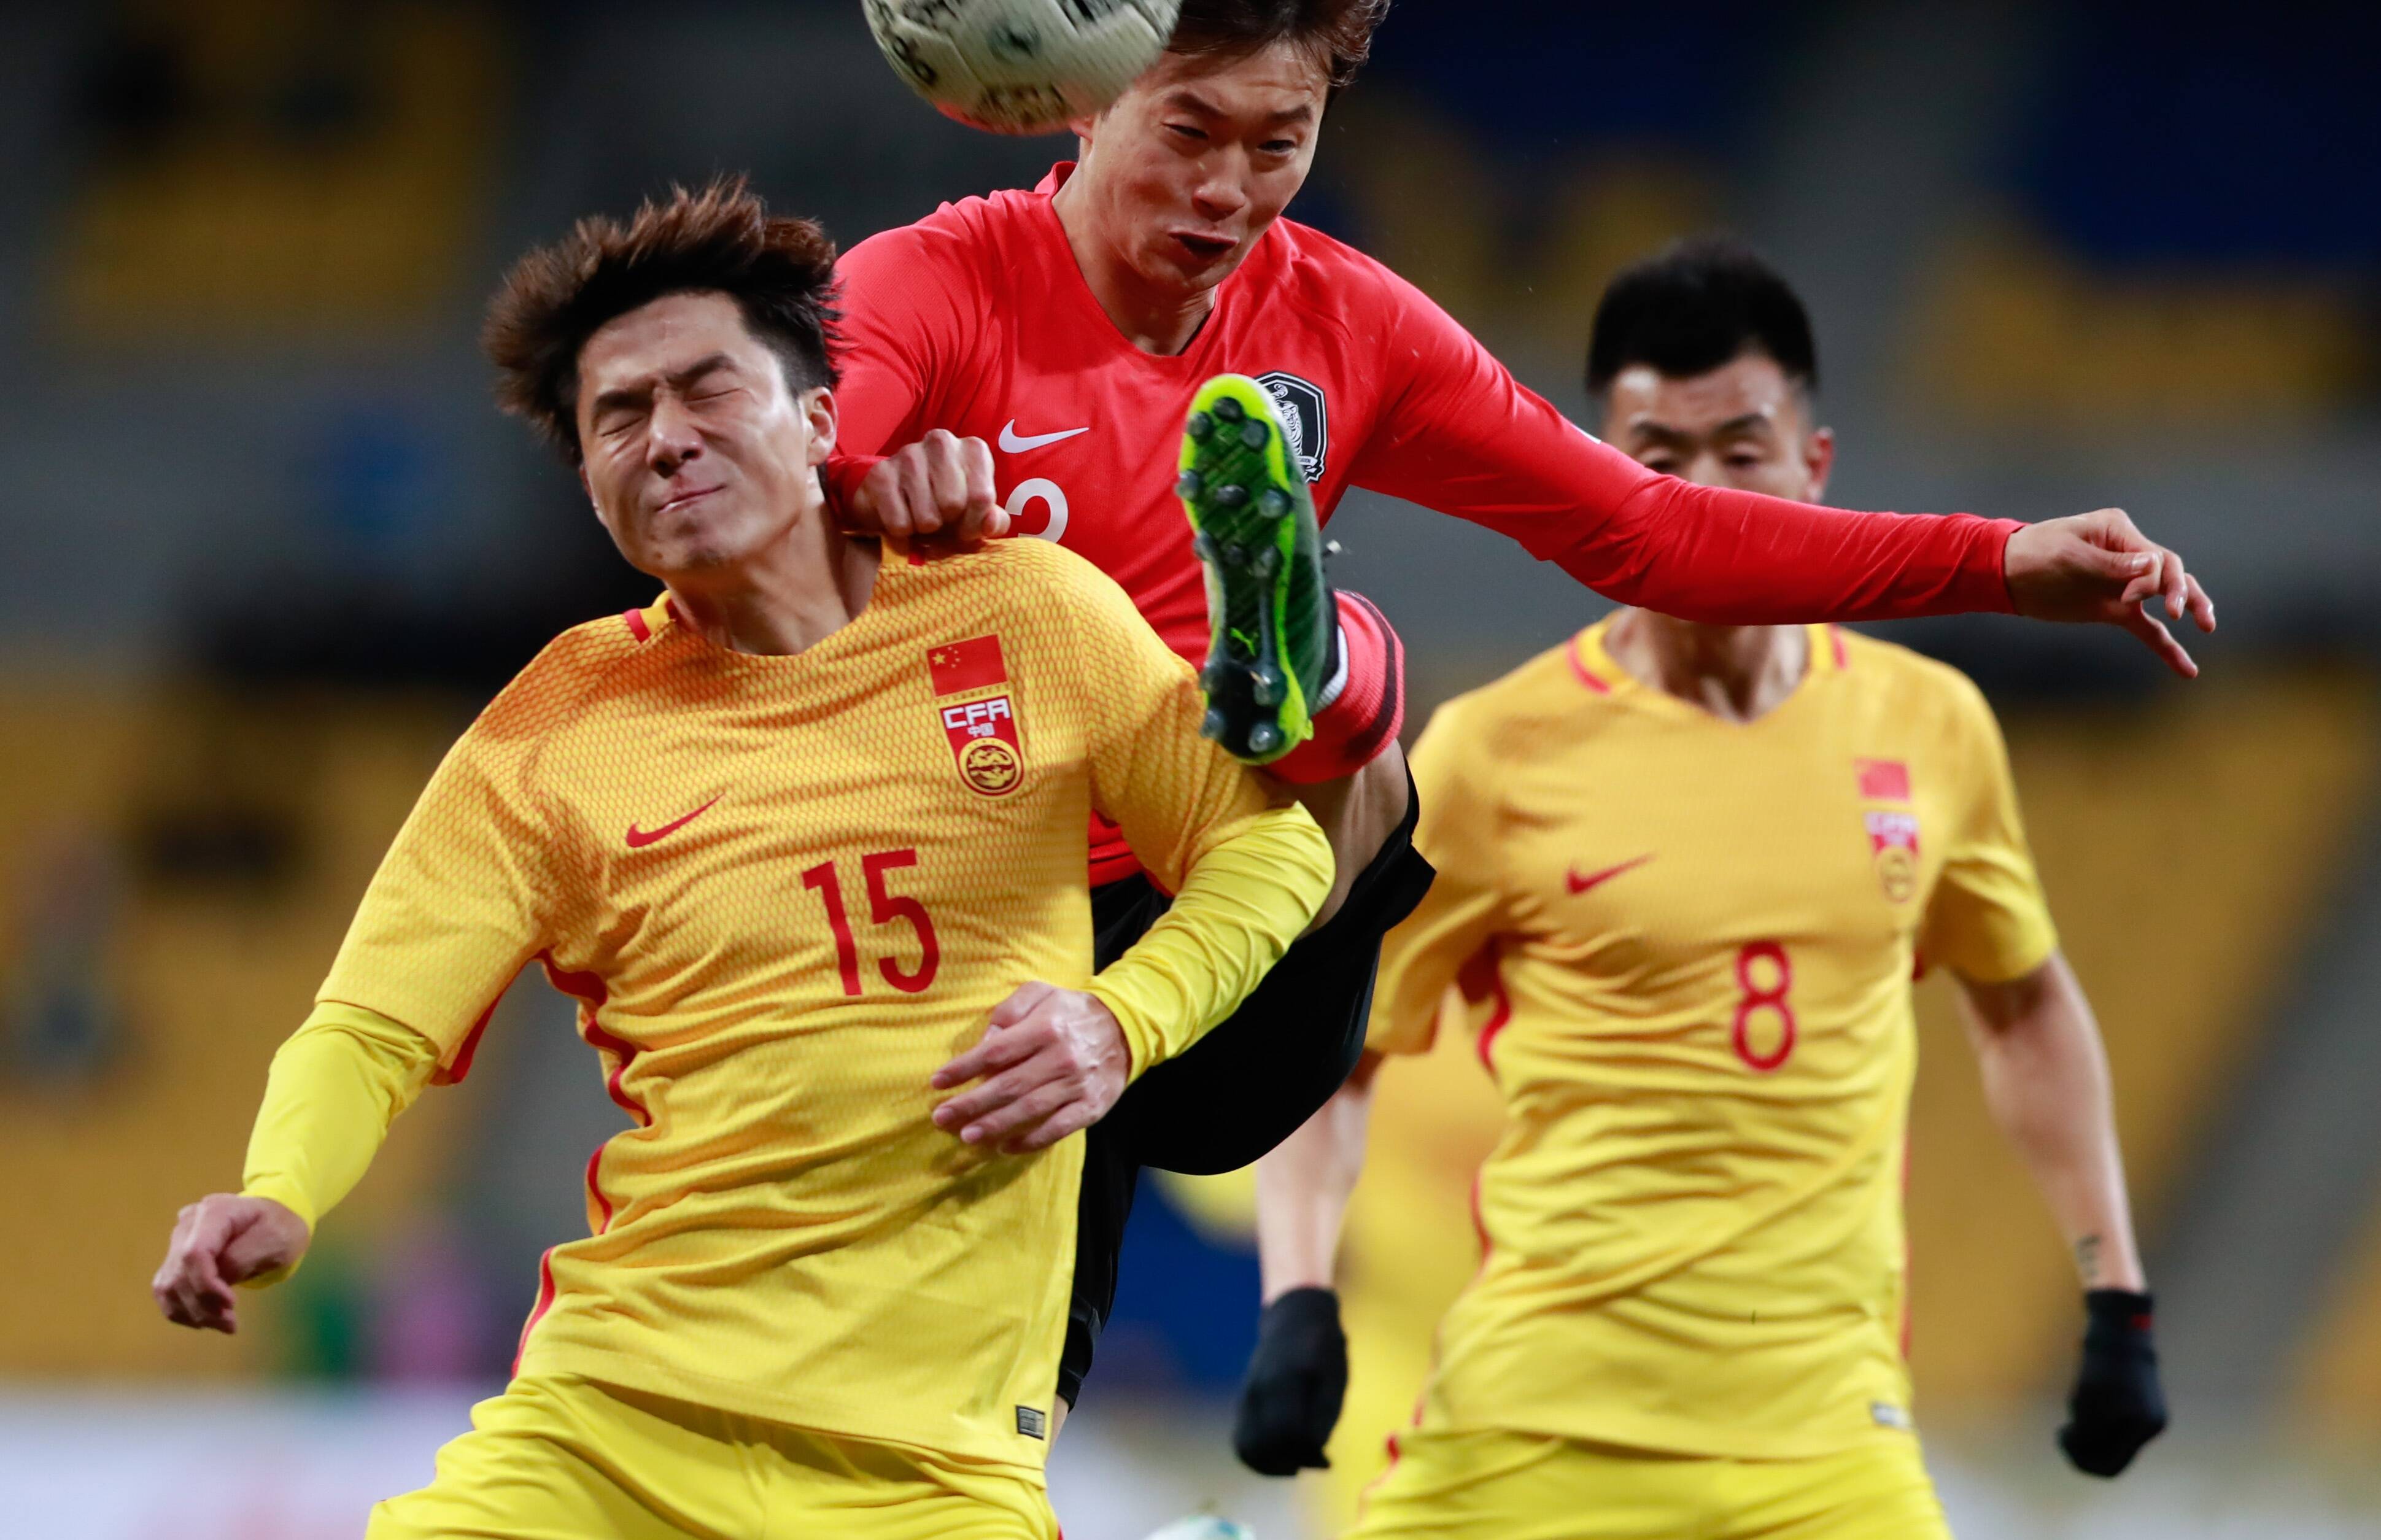 韩国撤回2023年亚洲杯申办中国成为唯一申办国家(图)